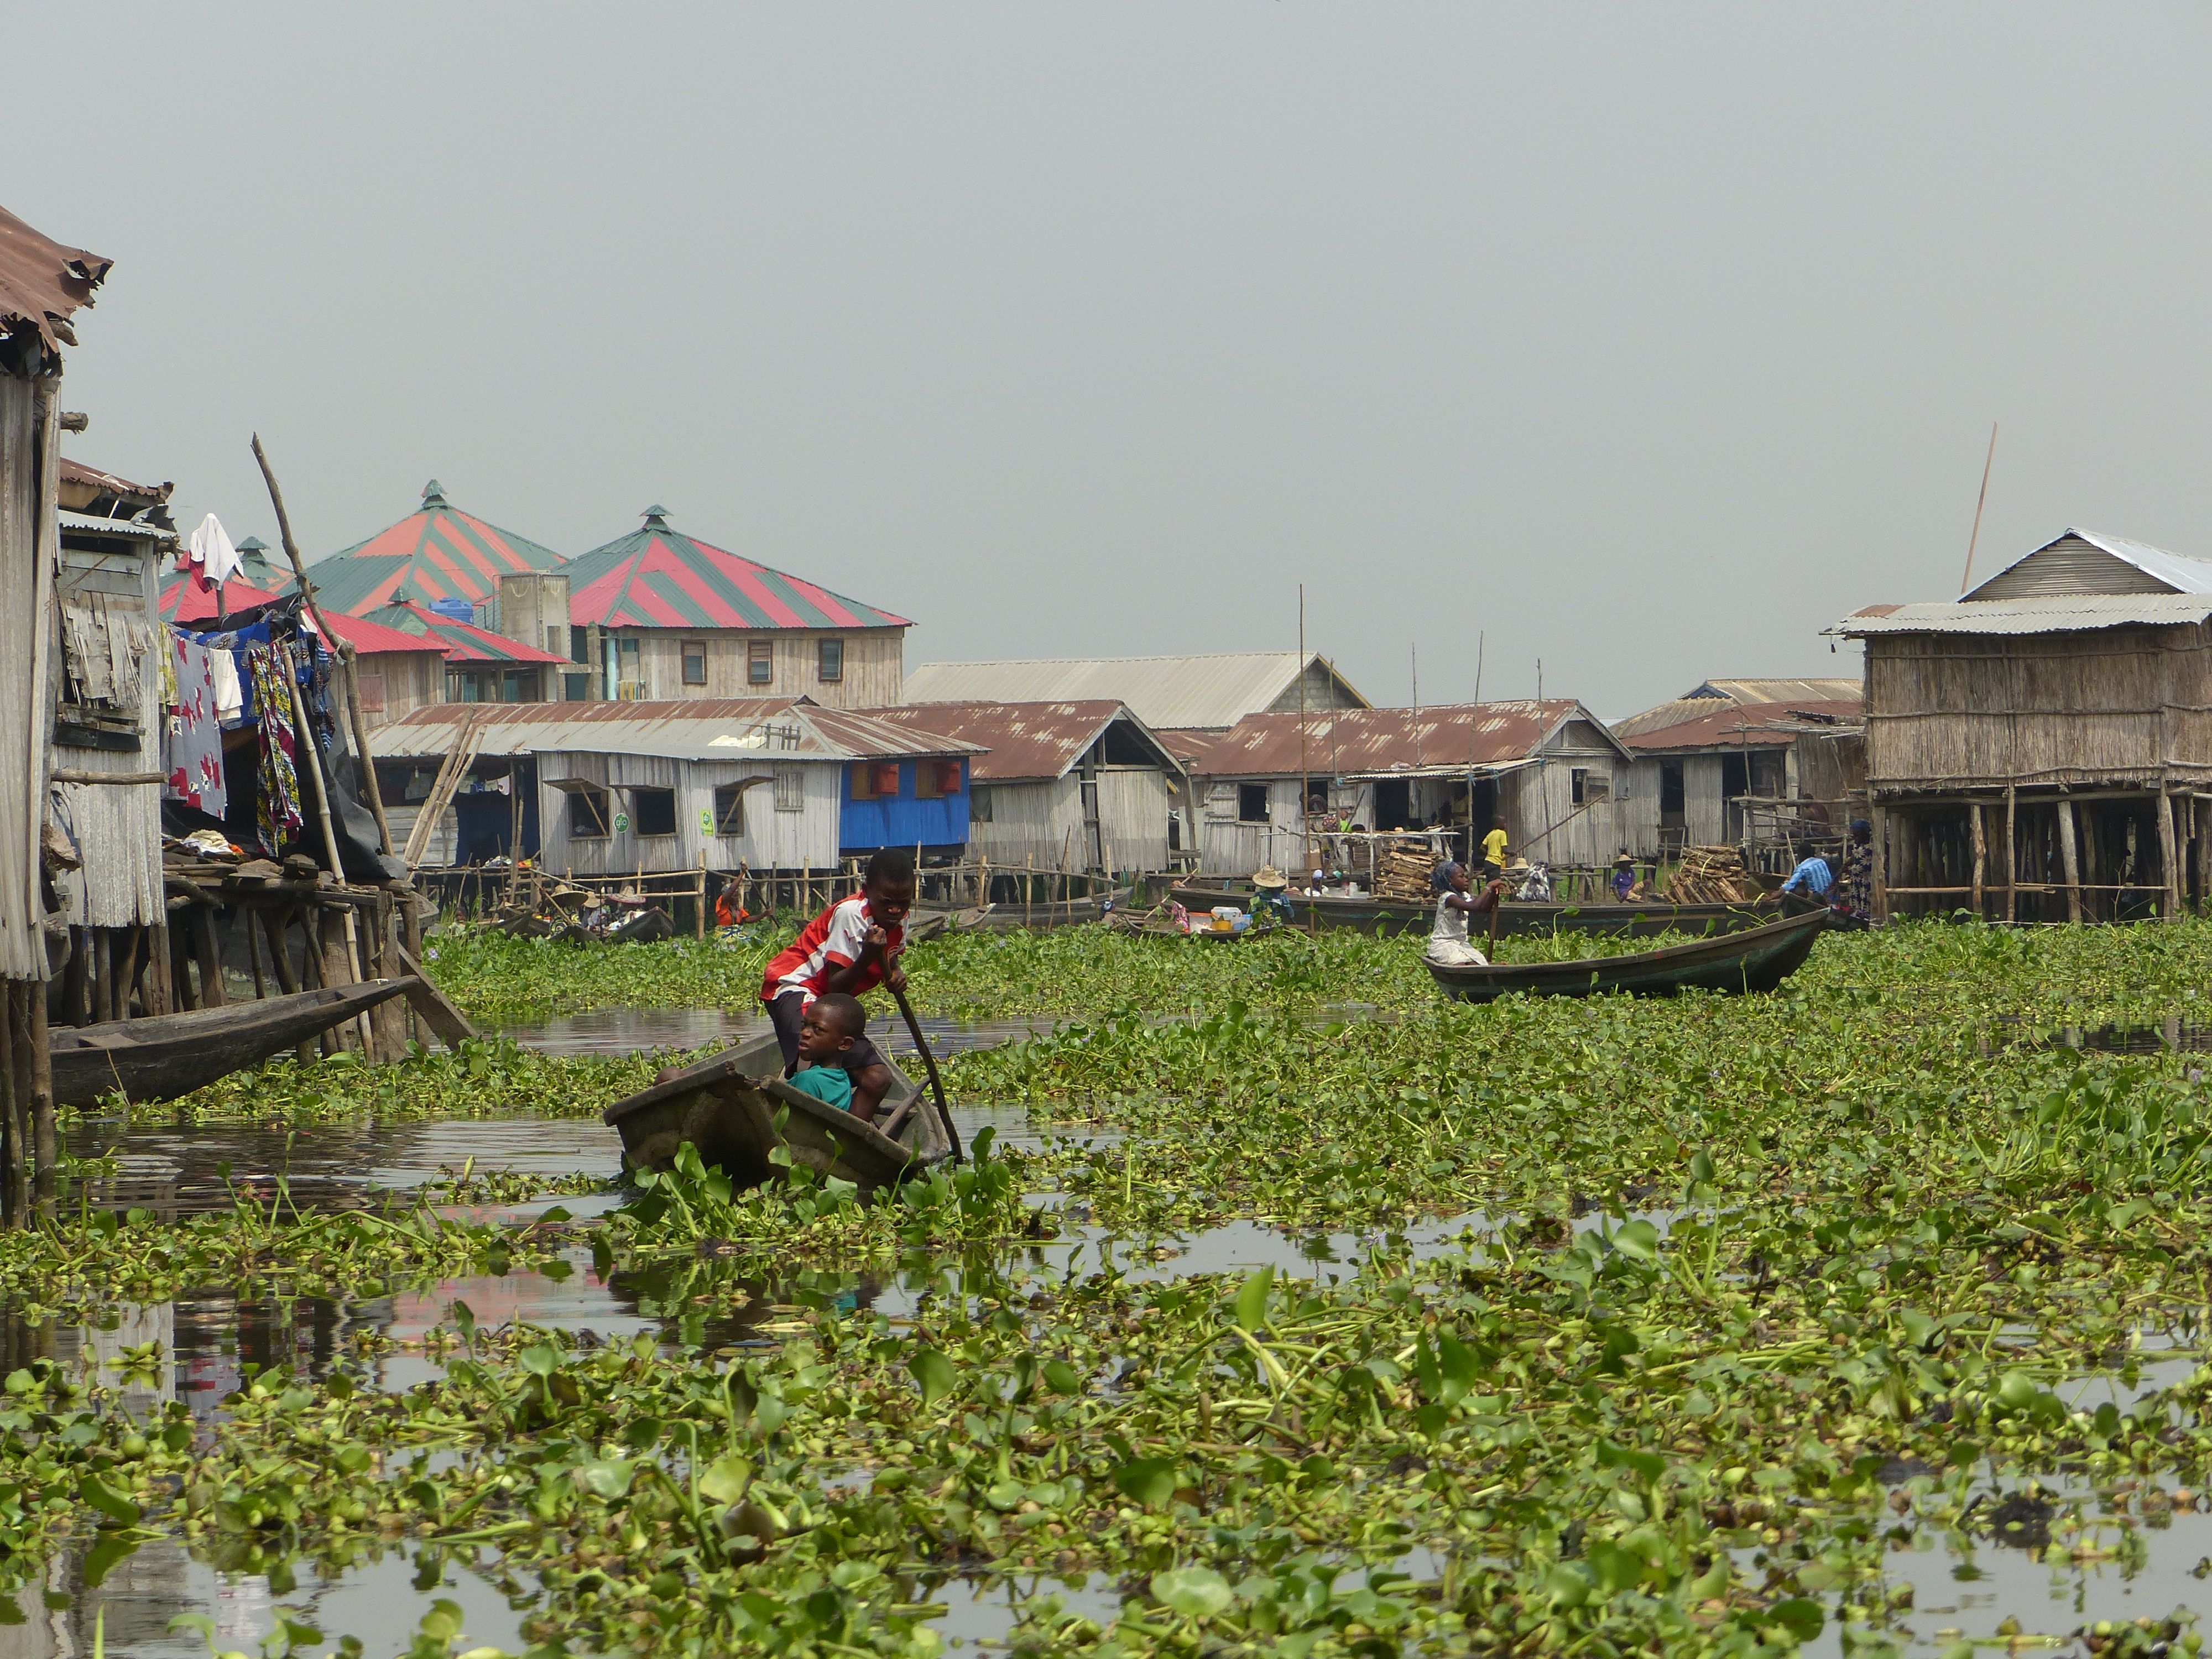 Benin, Lake Nokoue, Ganvie stilt village